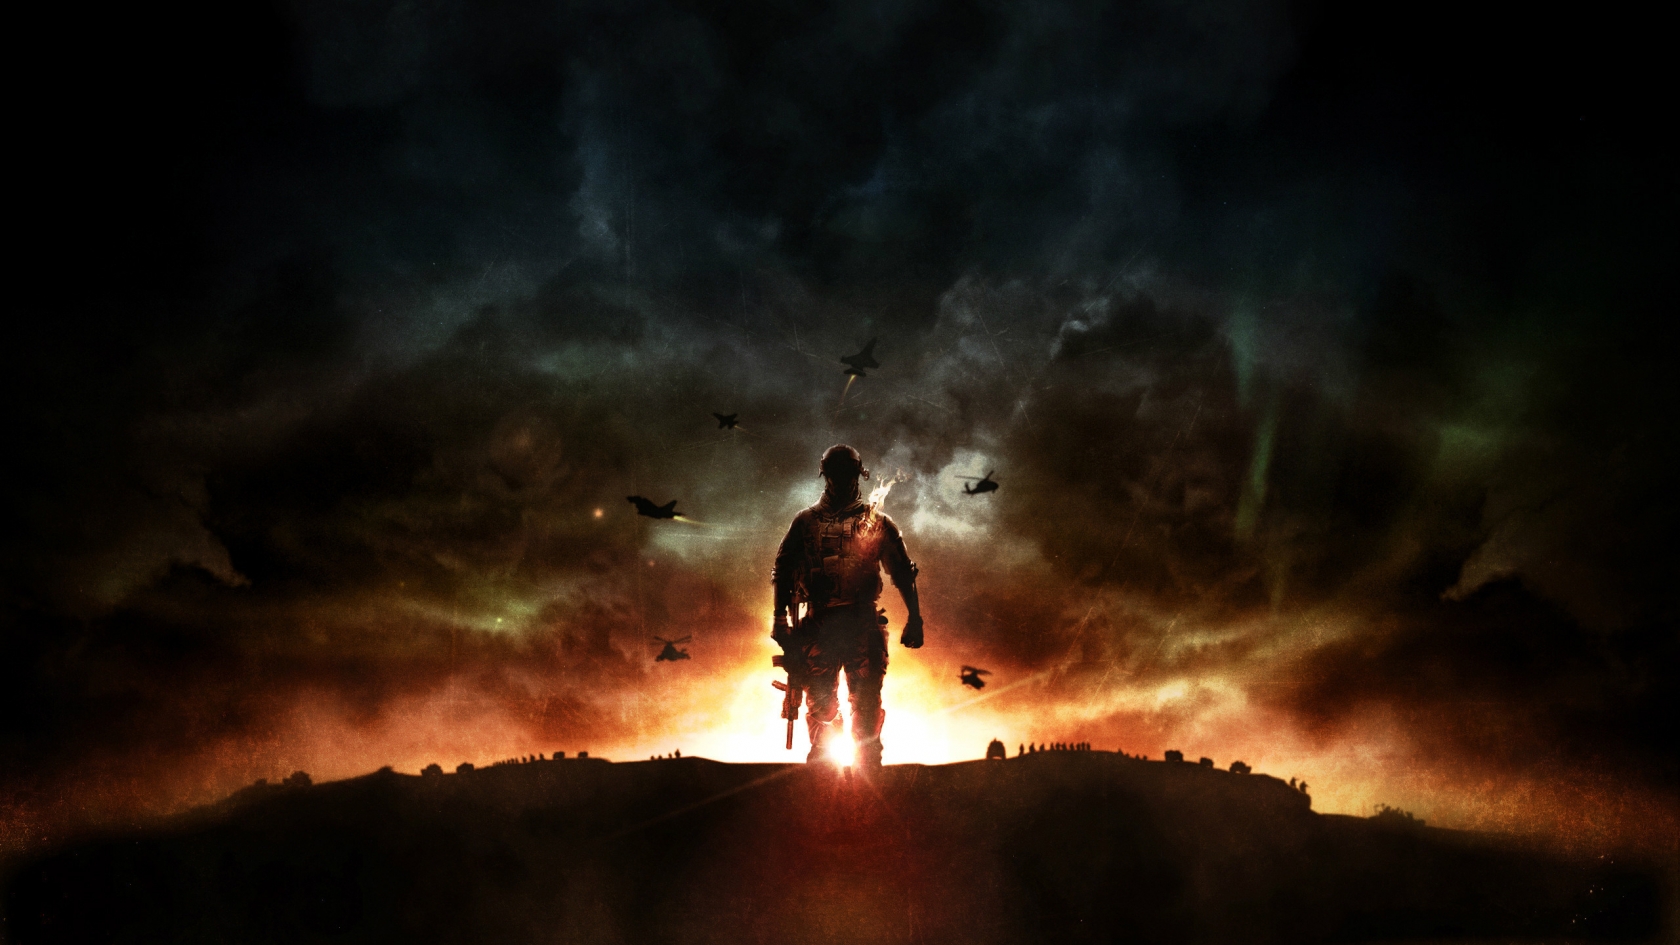 Battlefield 4 Sunset War for 1680 x 945 HDTV resolution